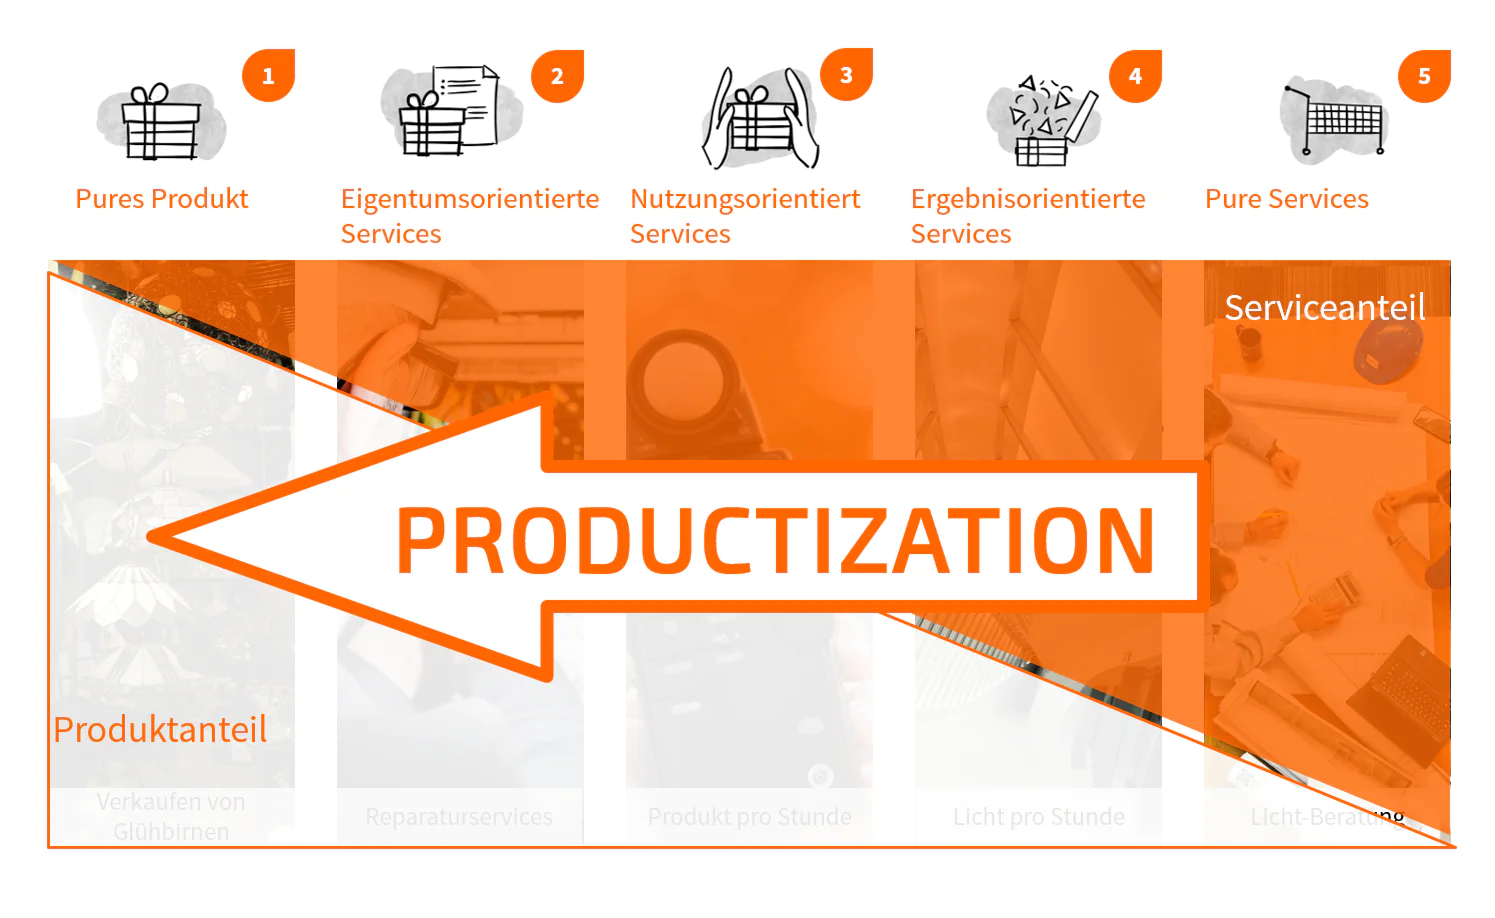 Productization als Geschäftsmodellinnovation in 5 Ausprägungen - TOM SPIKE